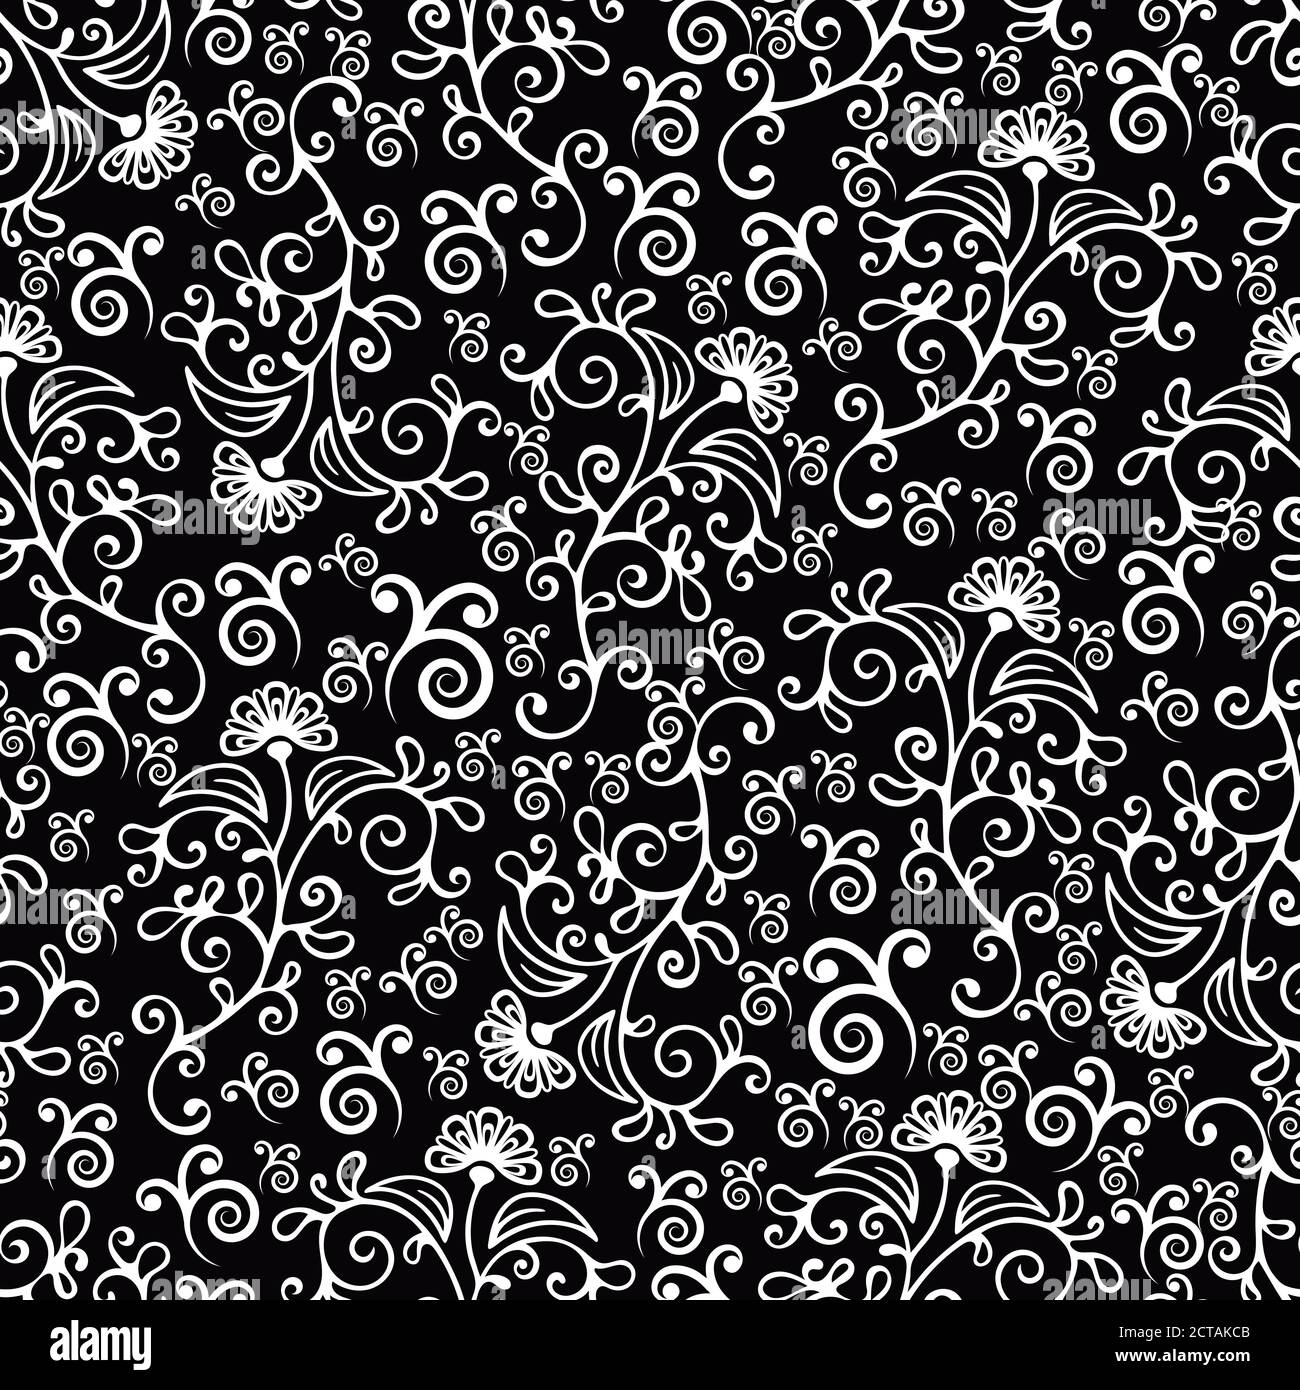 Strudel florale abstrakte nahtlose Muster, schwarz-weiß Ornament mit Locken, Blütenblätter und Blütenknospen. Für Stoffdesign, Tapete, Wrapper, Oberfläche Stock Vektor